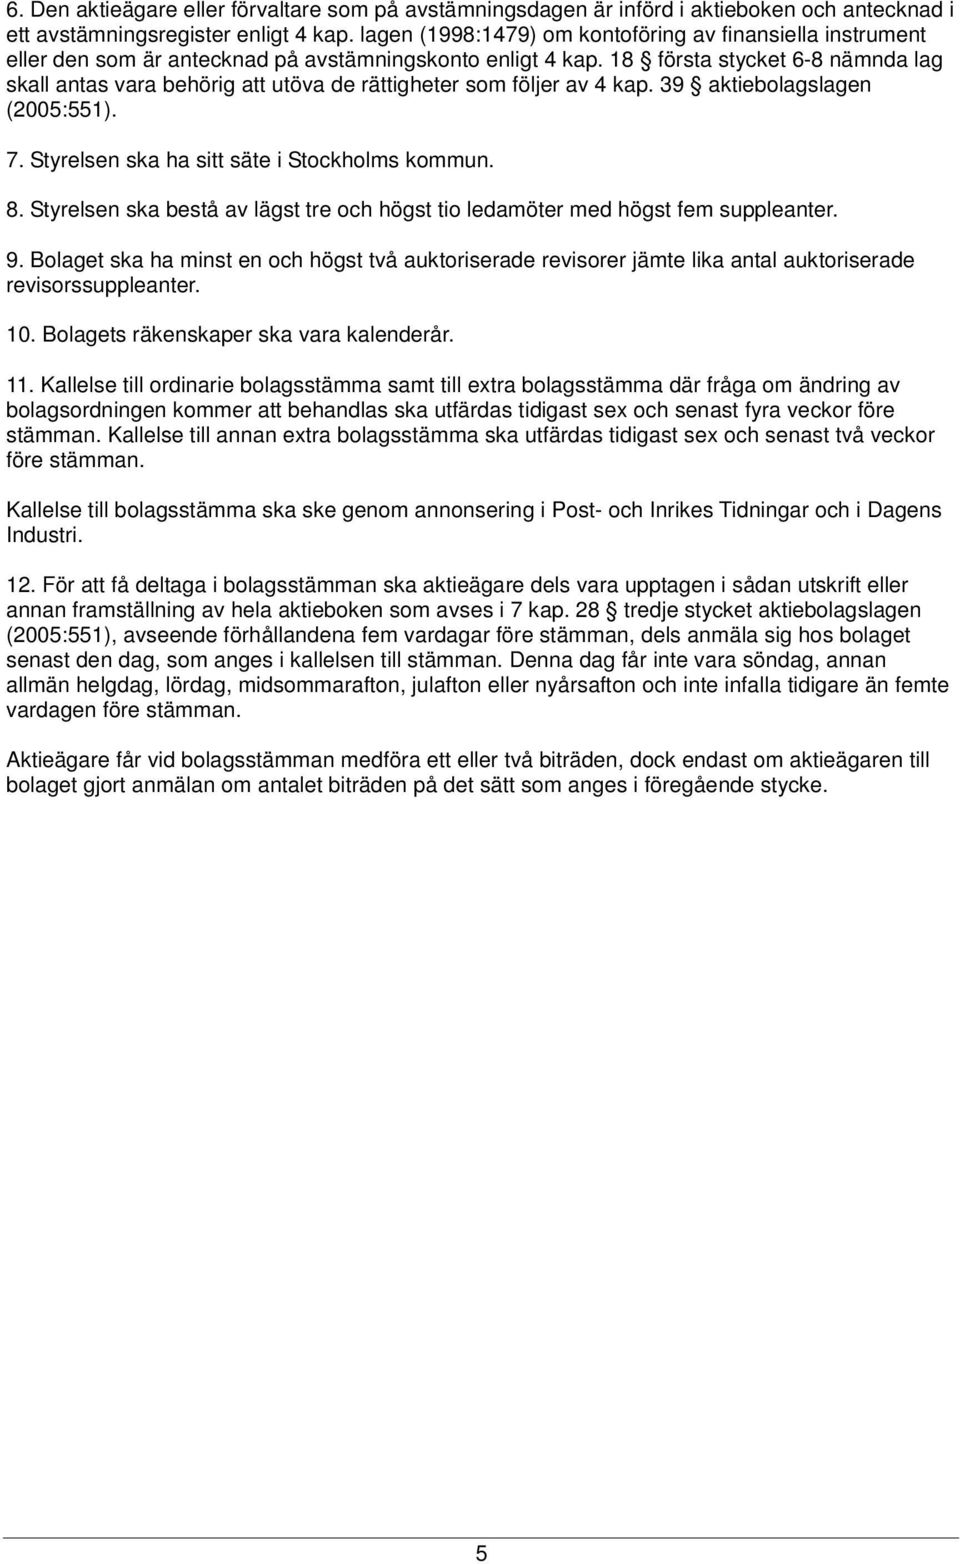 18 första stycket 6-8 nämnda lag skall antas vara behörig att utöva de rättigheter som följer av 4 kap. 39 aktiebolagslagen (2005:551). 7. Styrelsen ska ha sitt säte i Stockholms kommun. 8.